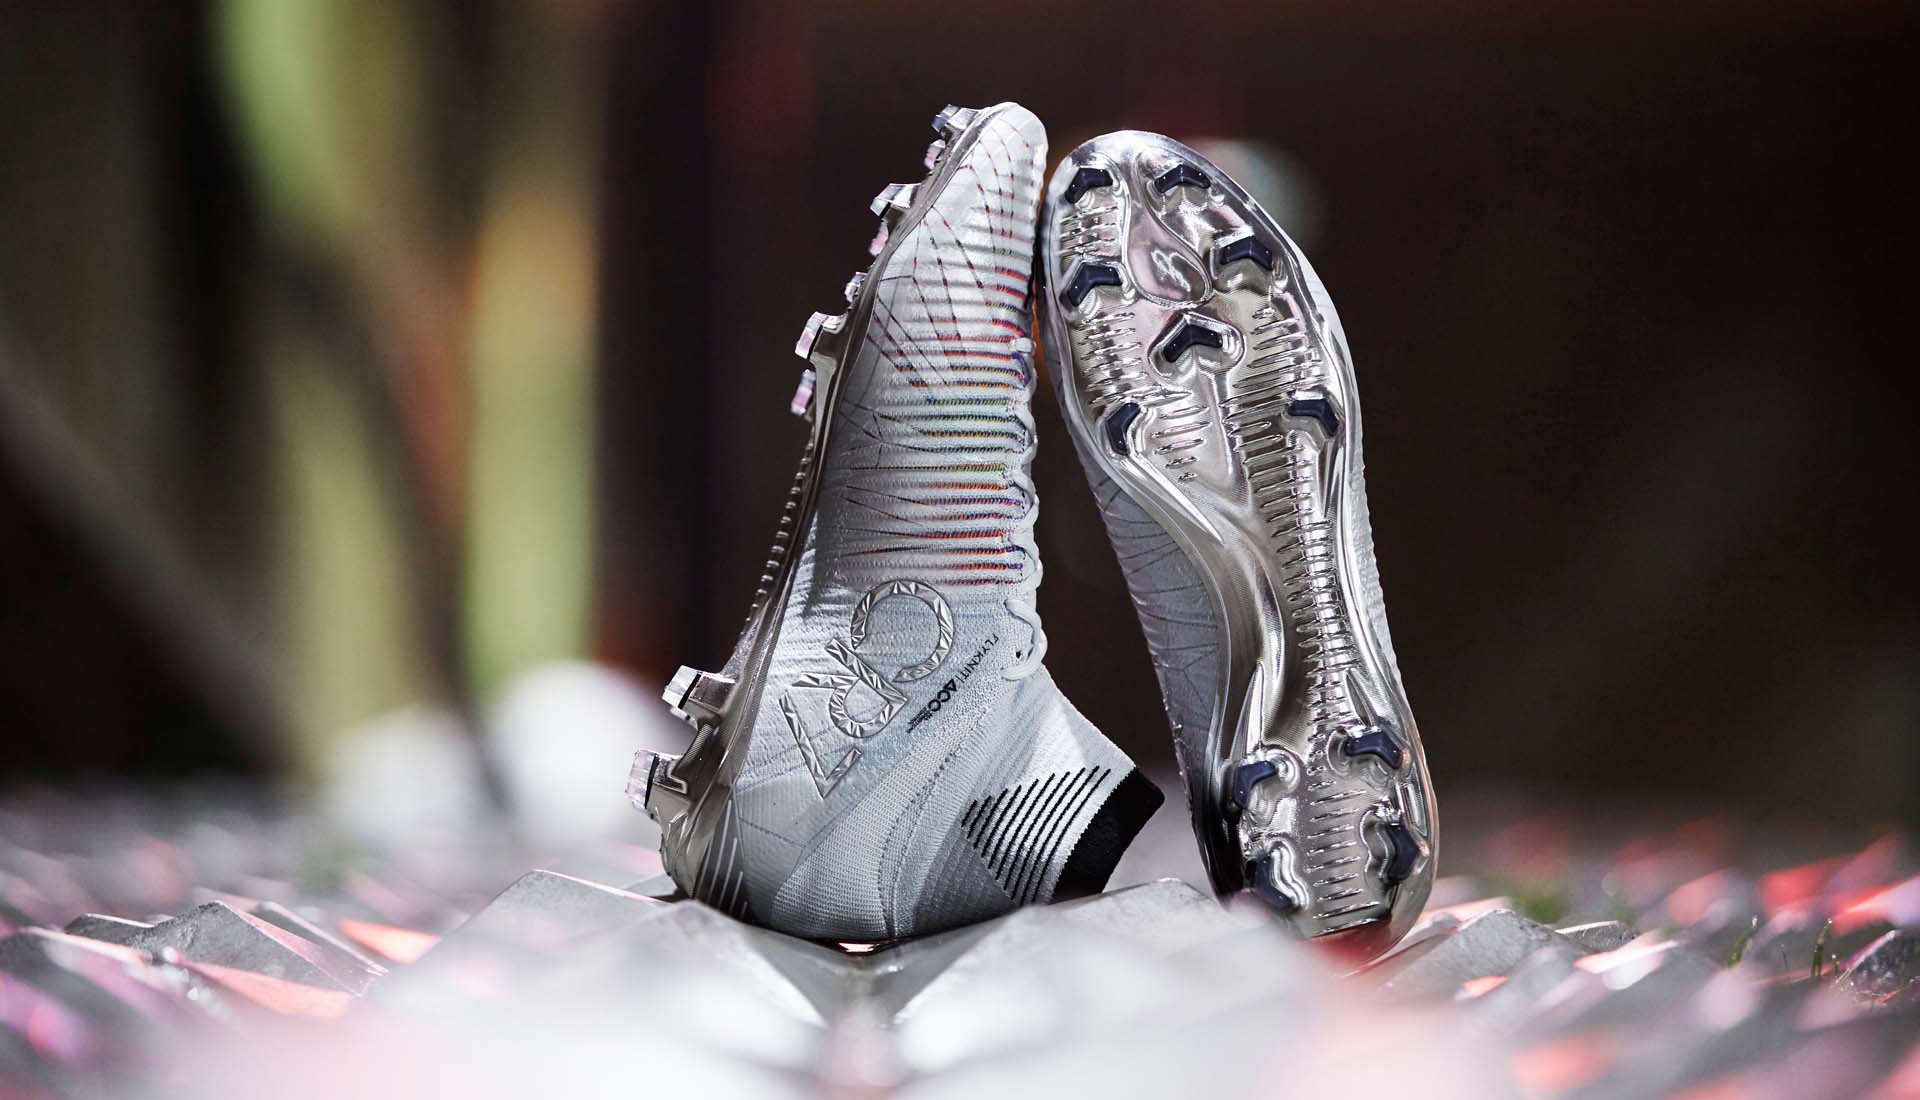 Giày đá bóng Nike Mercurial Superfly V với các sợi dây flywire trên bề mặt da giày